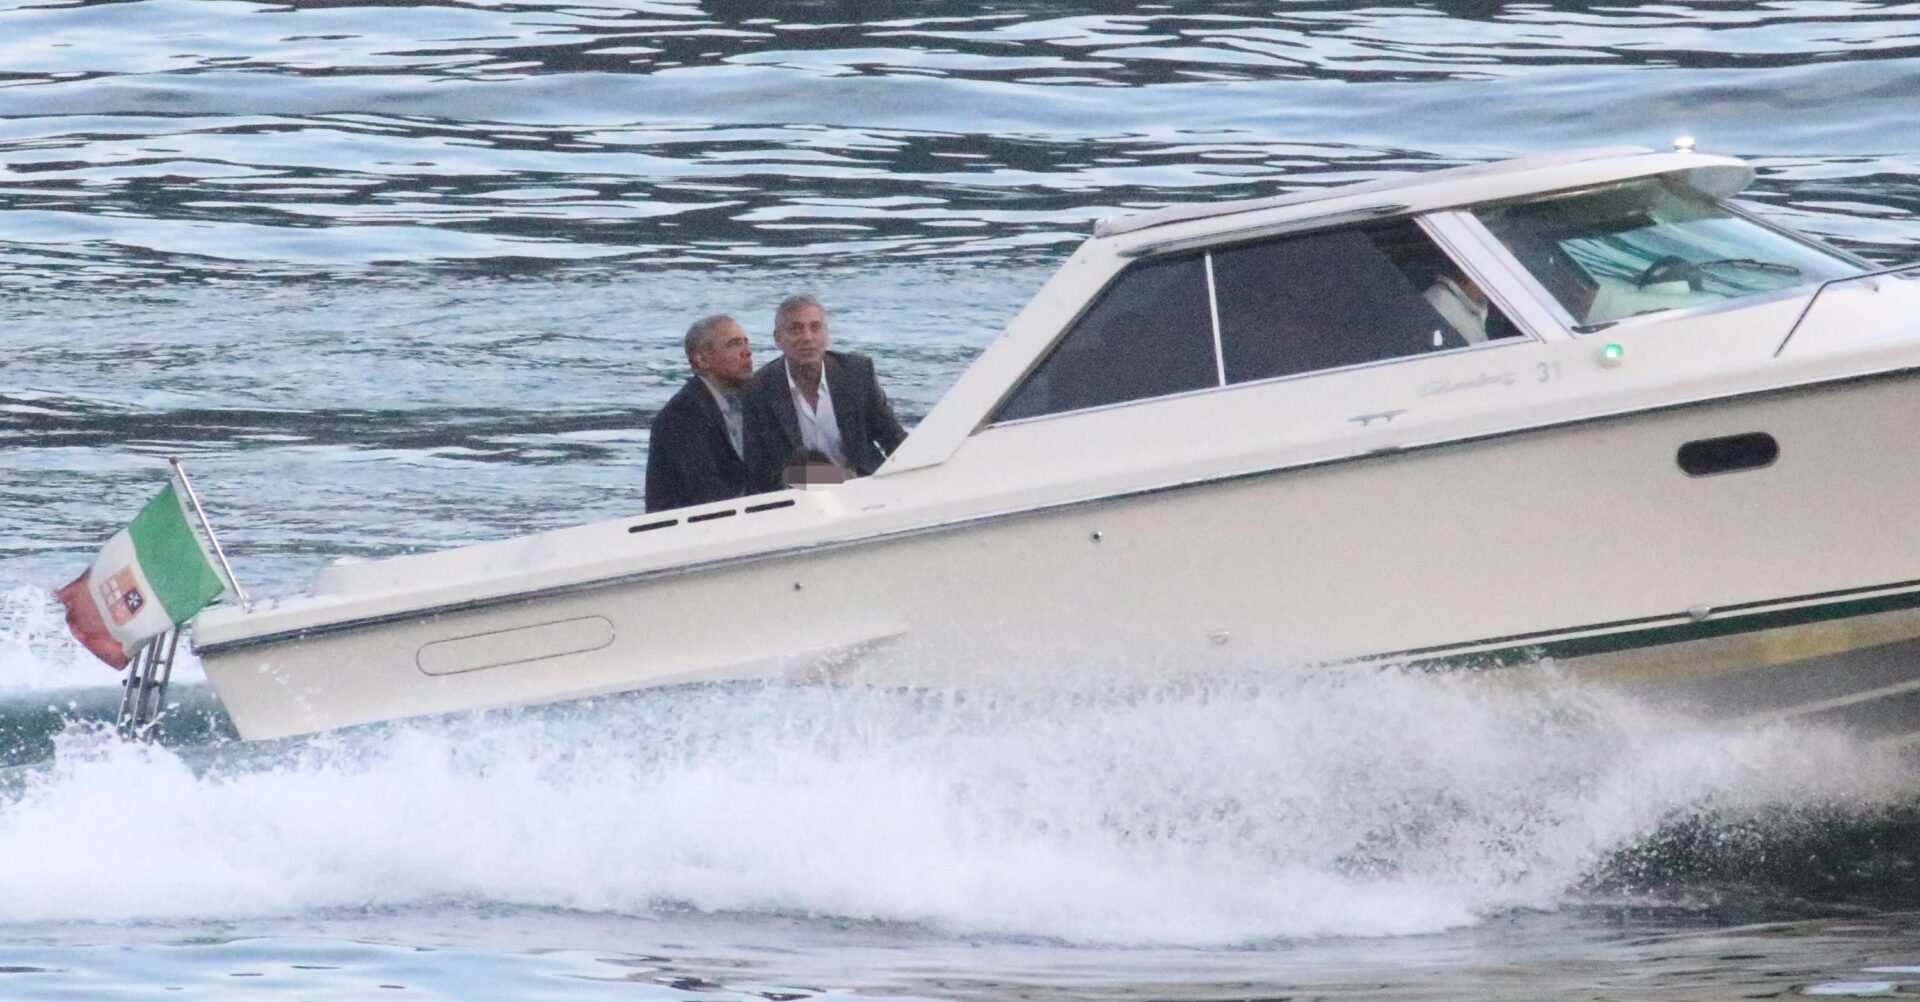 Vacanze alla George Clooney? Scegli il lago!